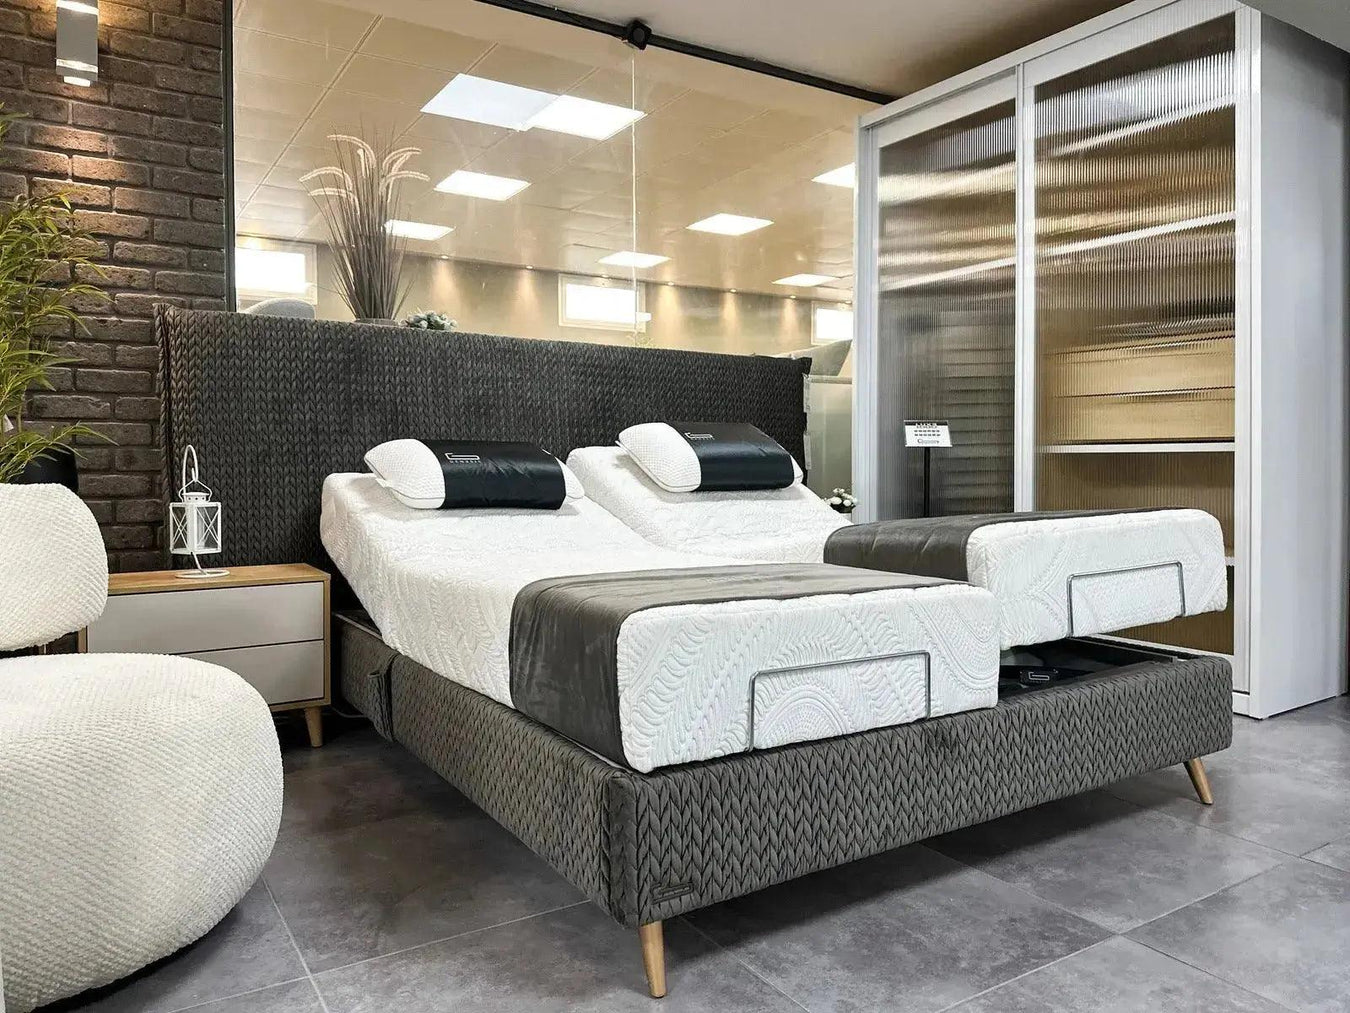 CETO | מיטה מתכווננת מפנקת בעיצוב מודרני ייחודי - אשריאן | ASHERIAN